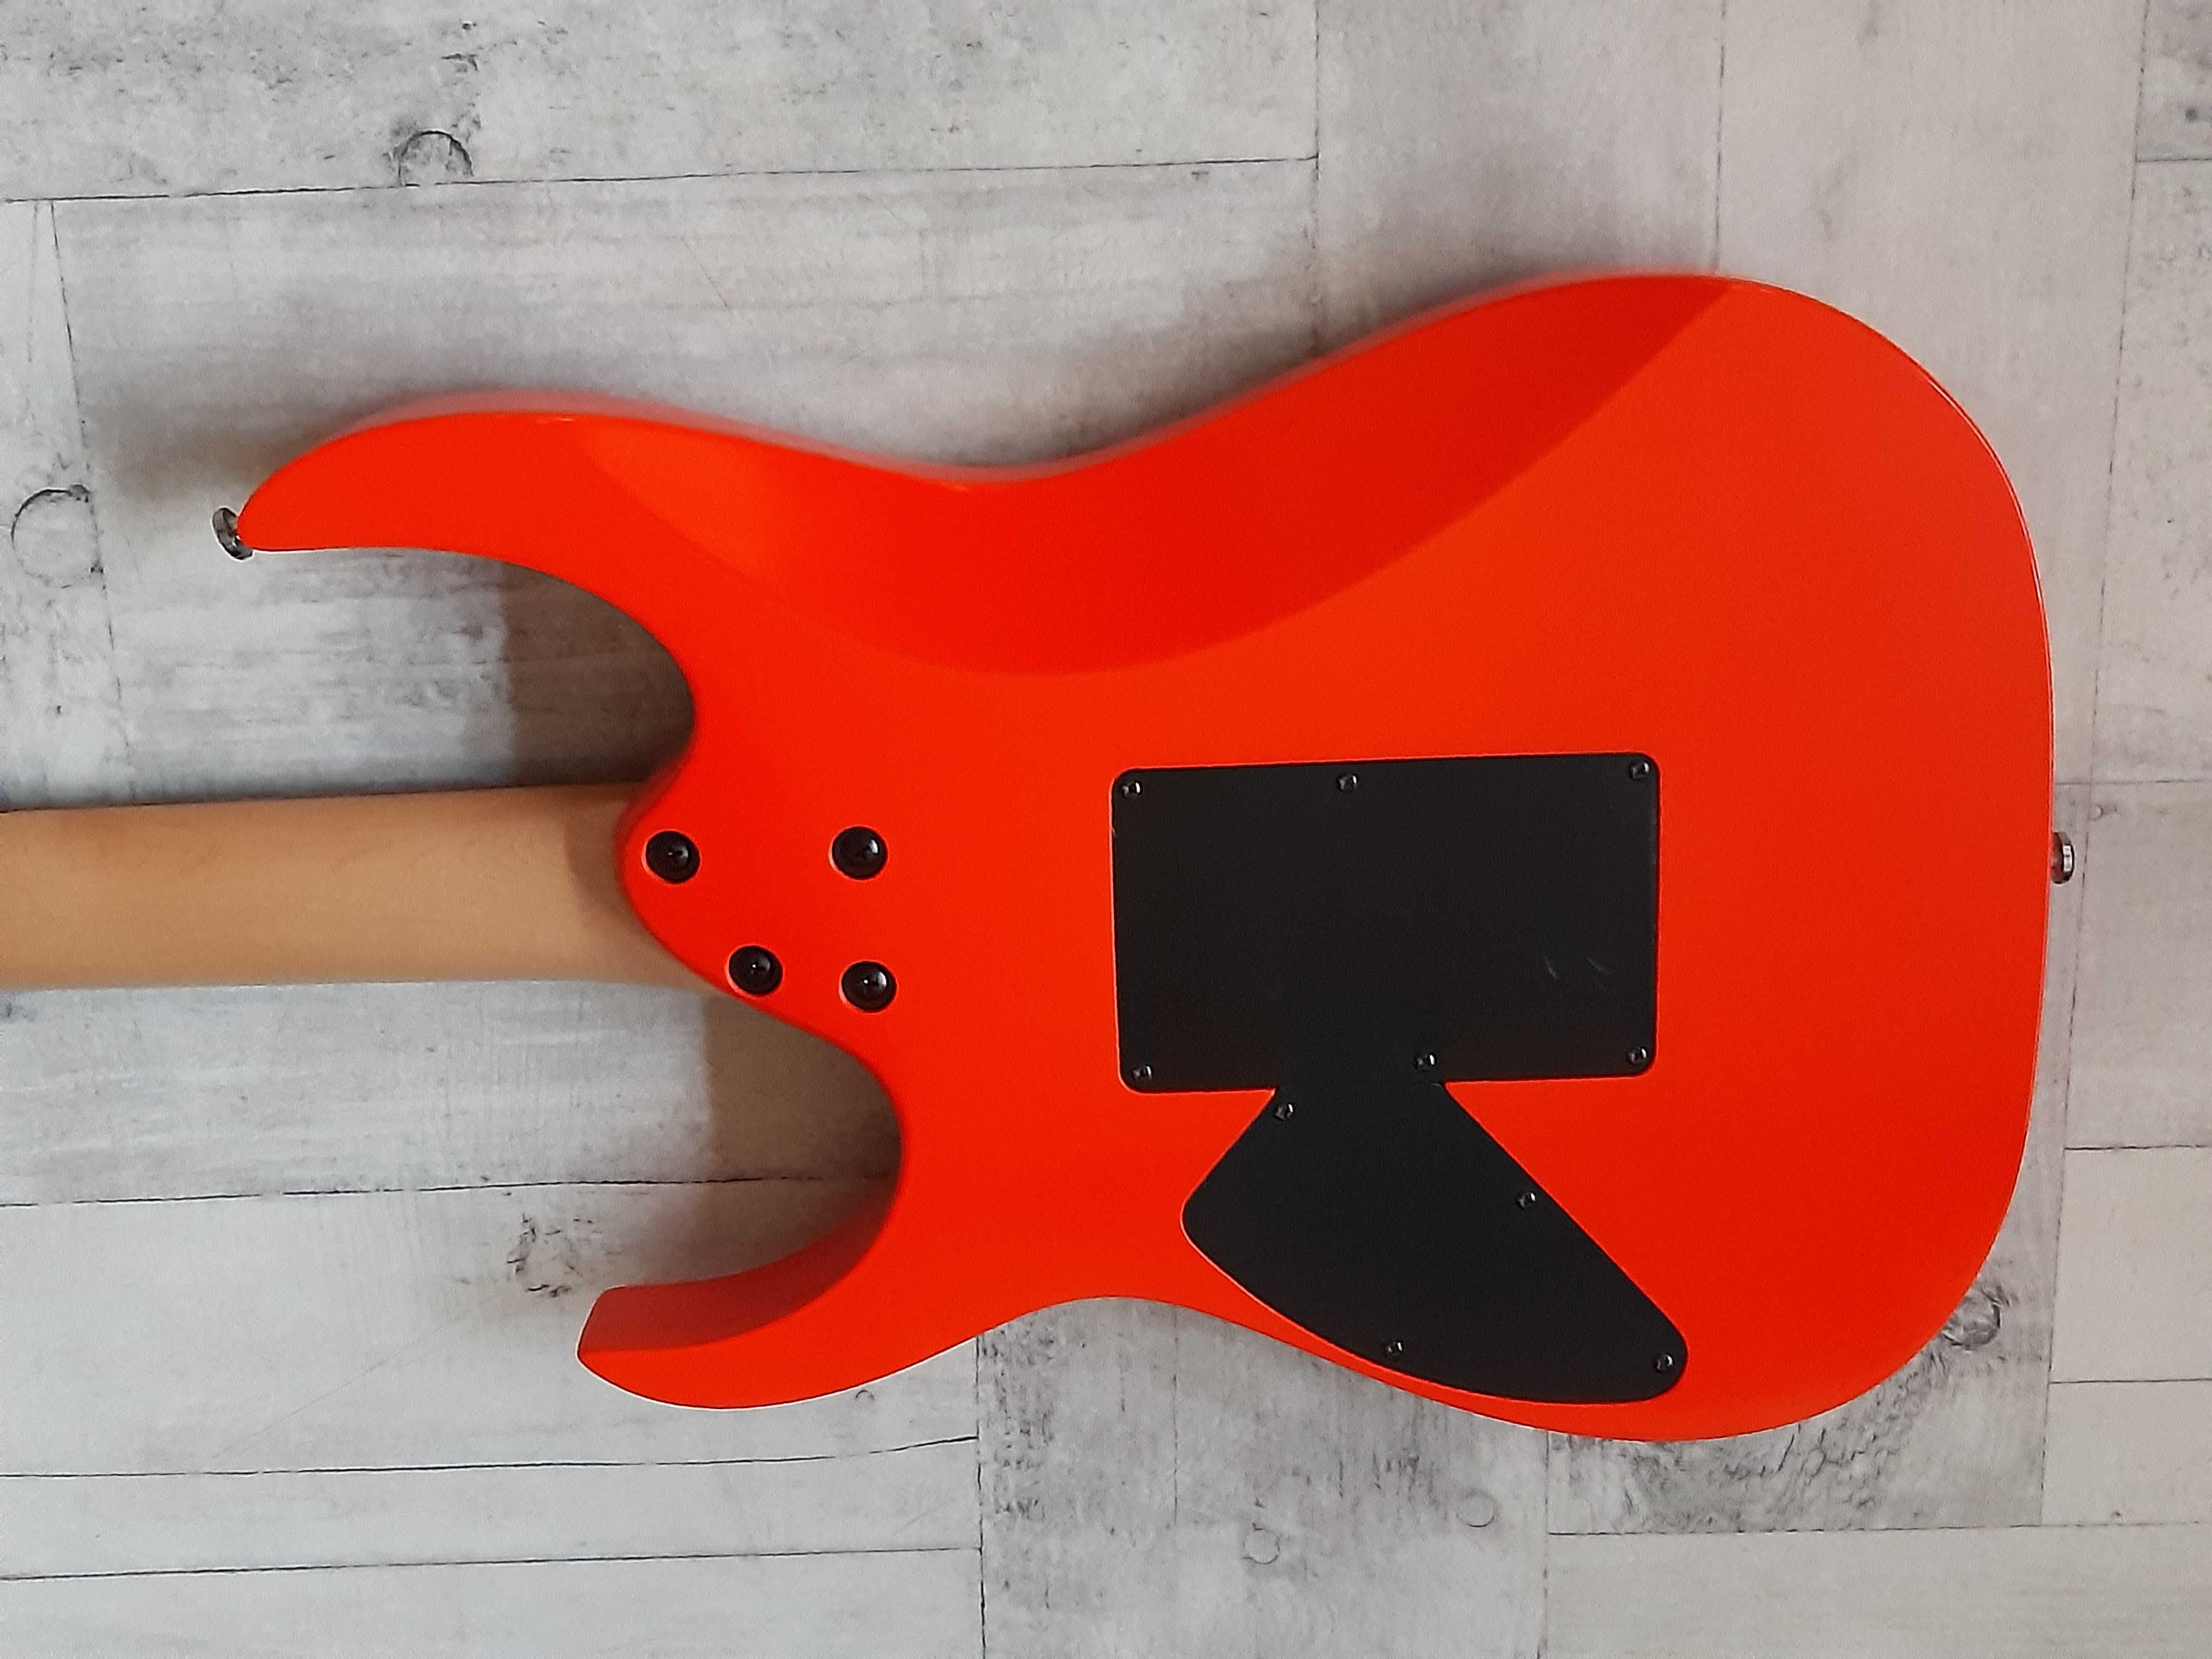 Gitara Ibanez RG 270 Red Orange Neon -Korea 1999r- wysyłka lub zamiana